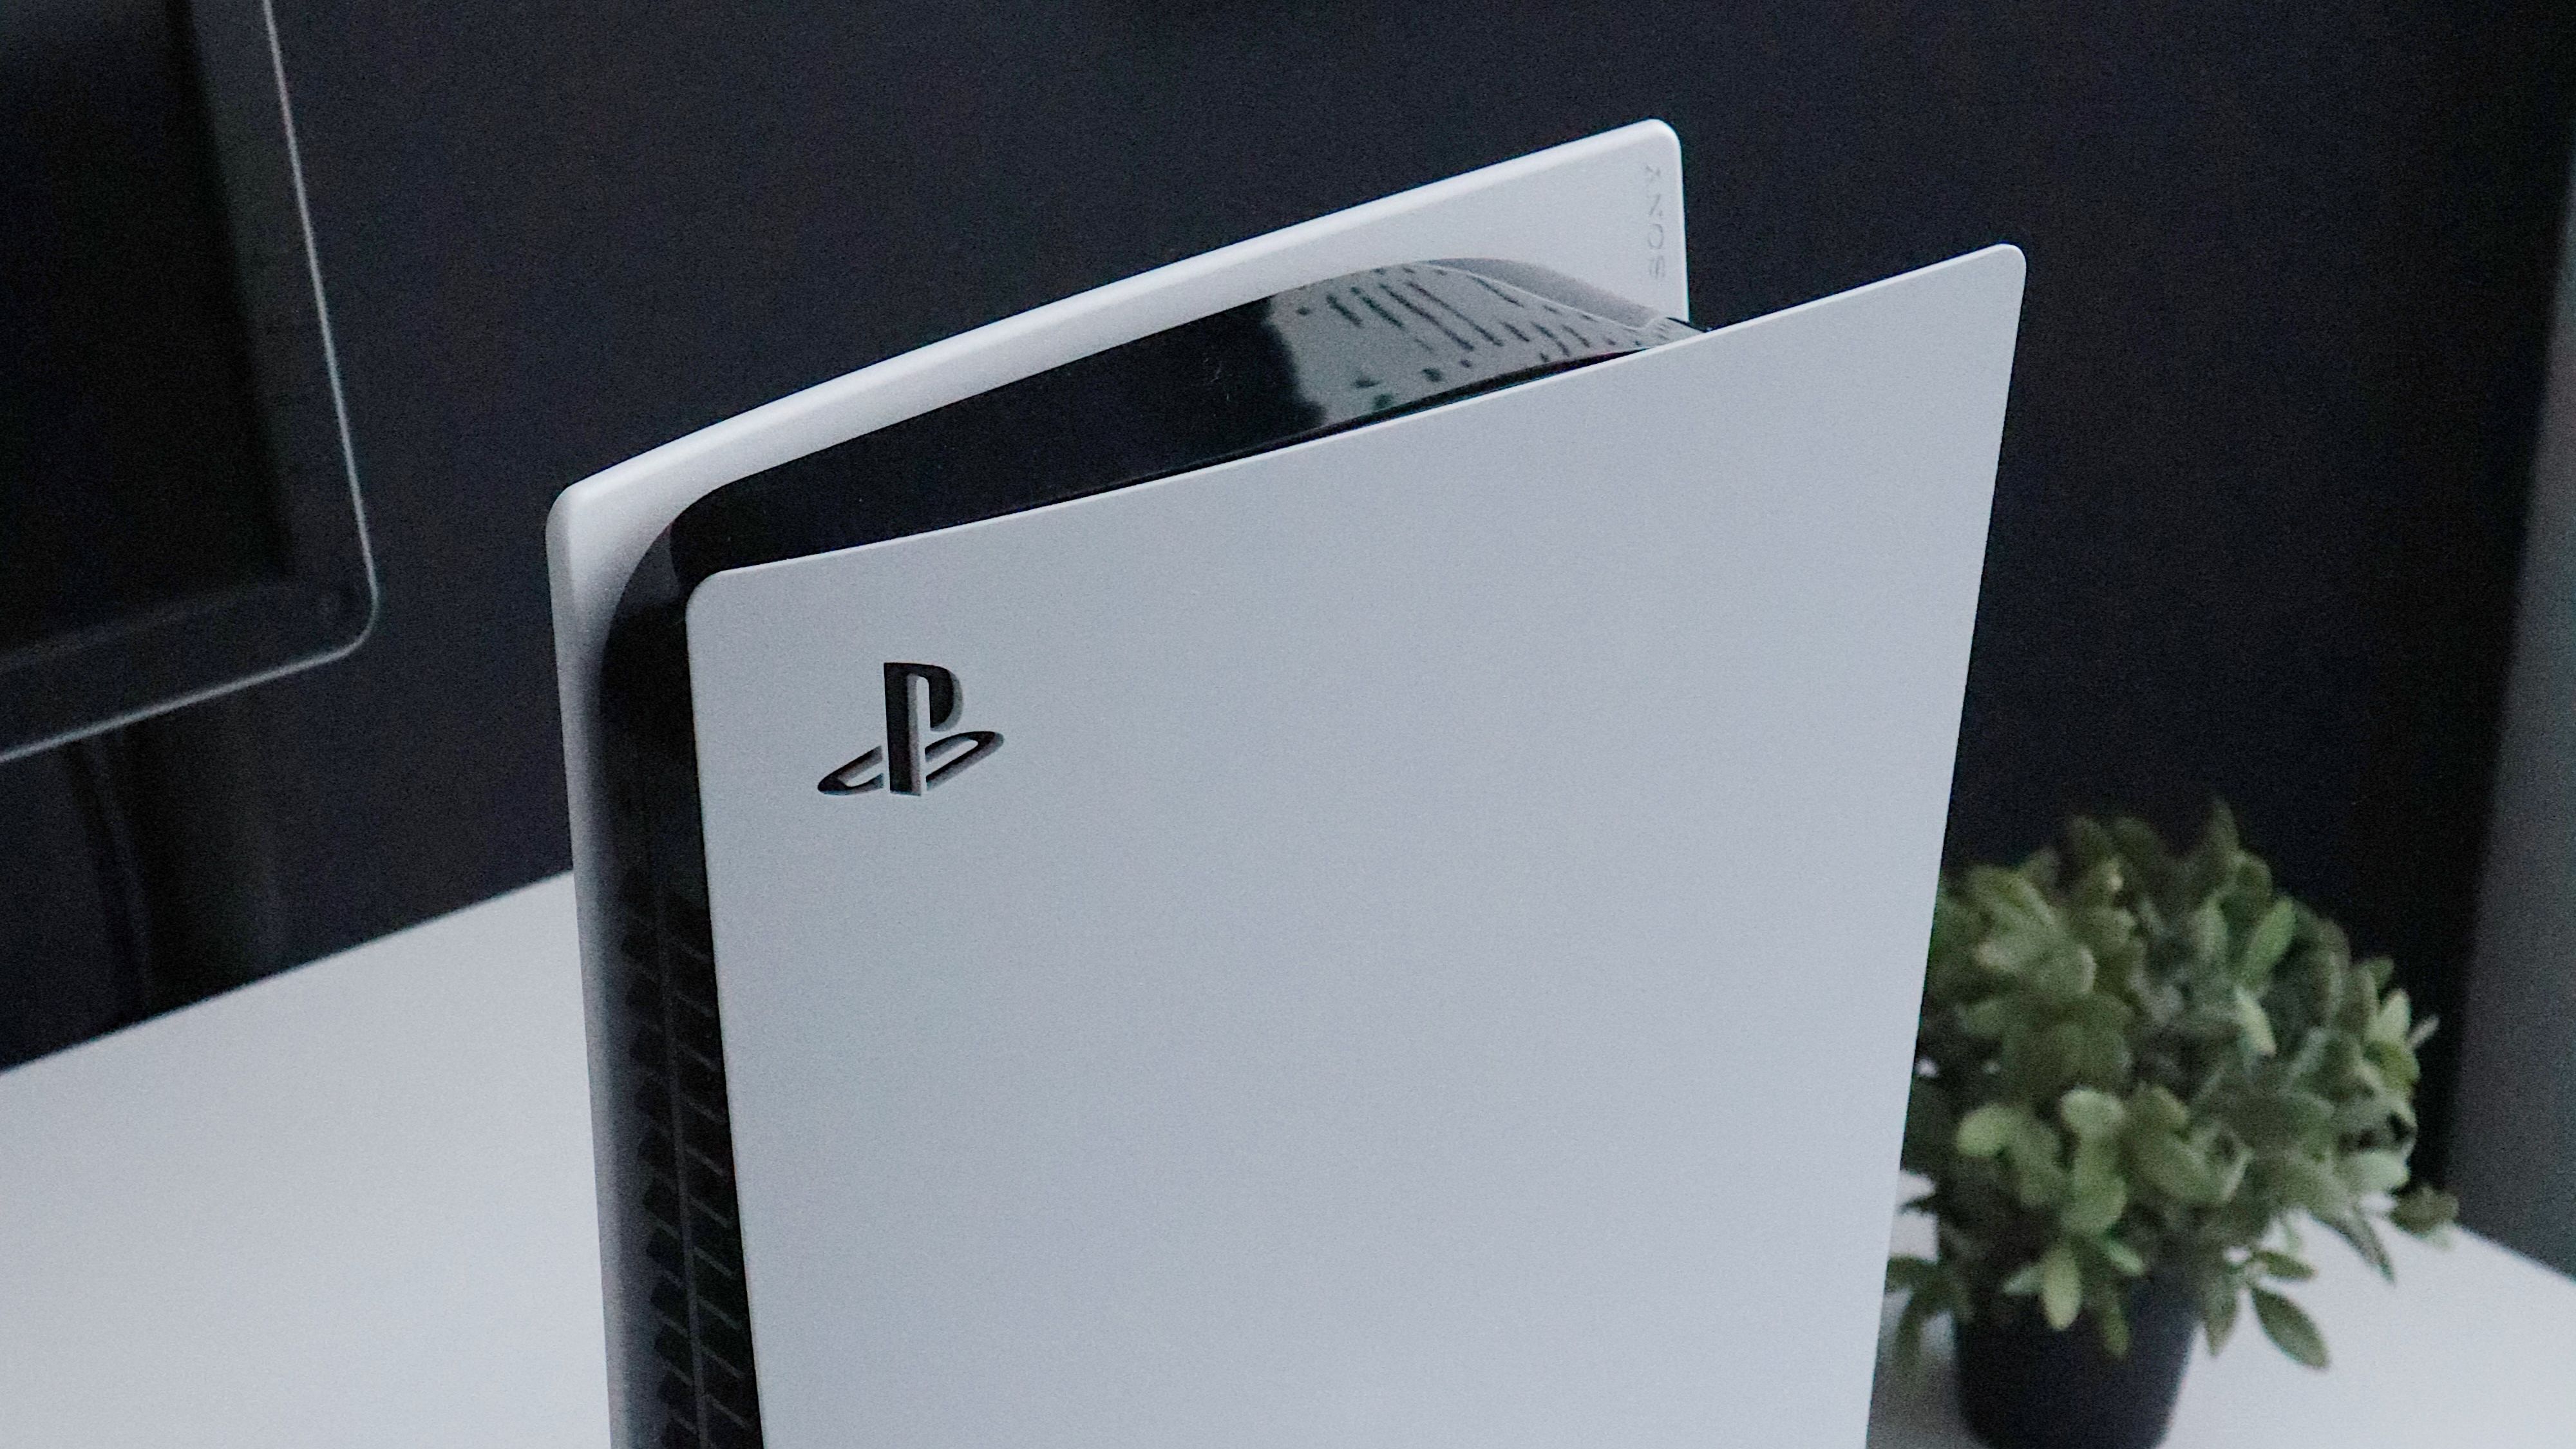 🤑 PARCELADO  PlayStation 5 atinge ótimo preço em 10x sem juros com cupom  - Canaltech